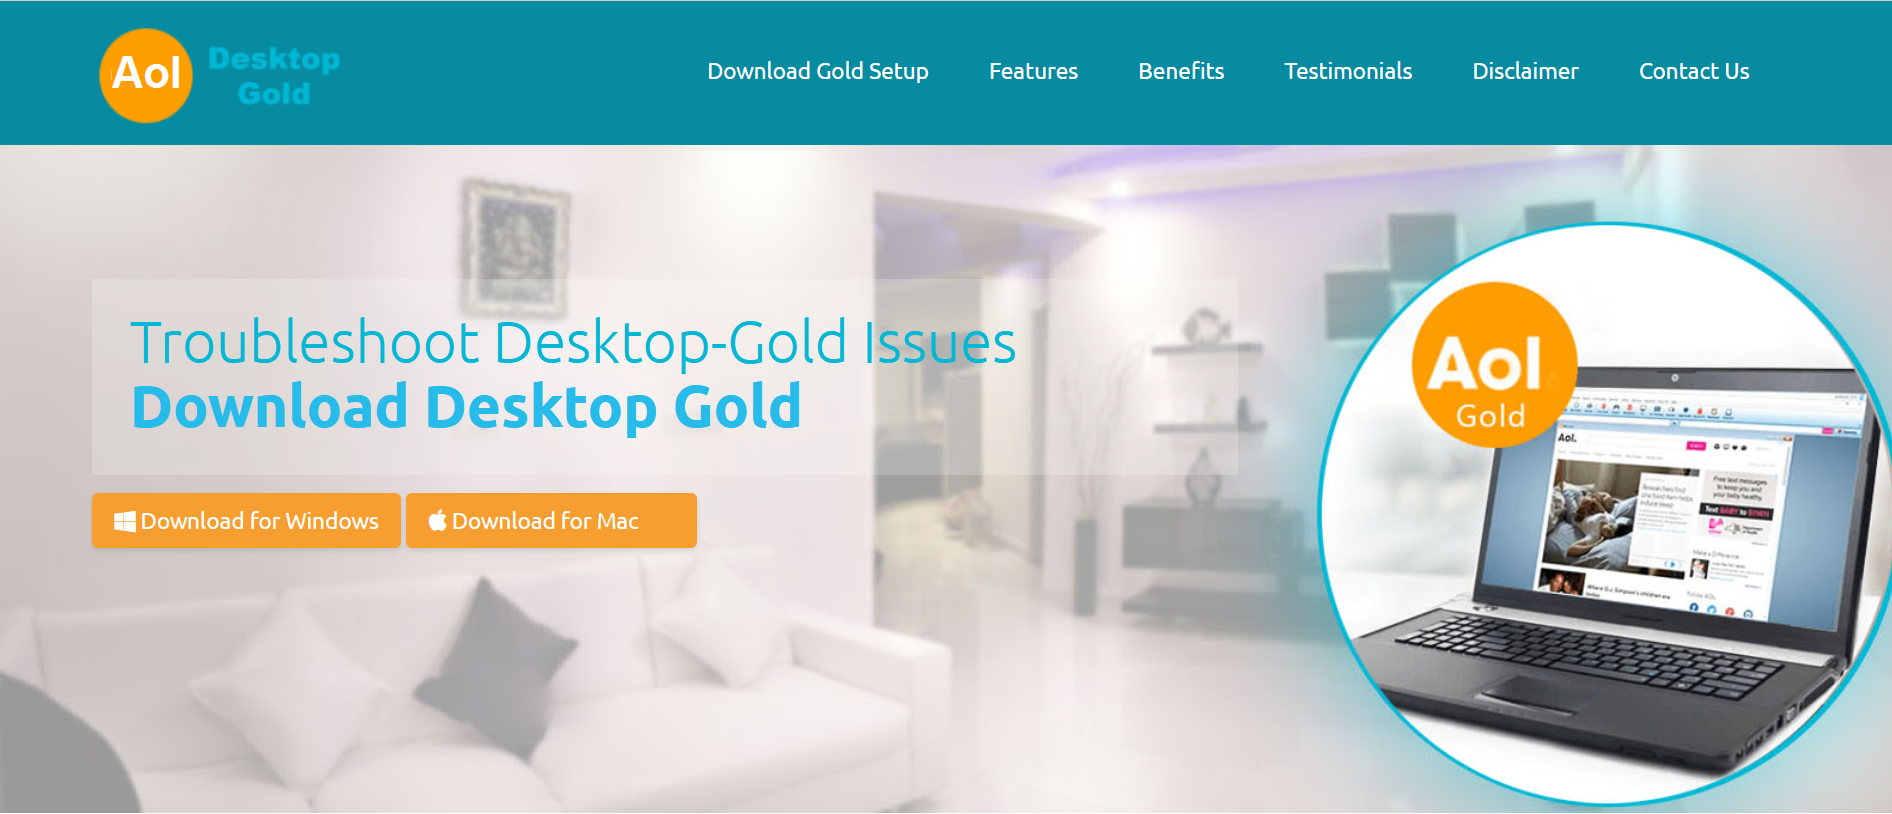 sign-in-aol-gold-desktop